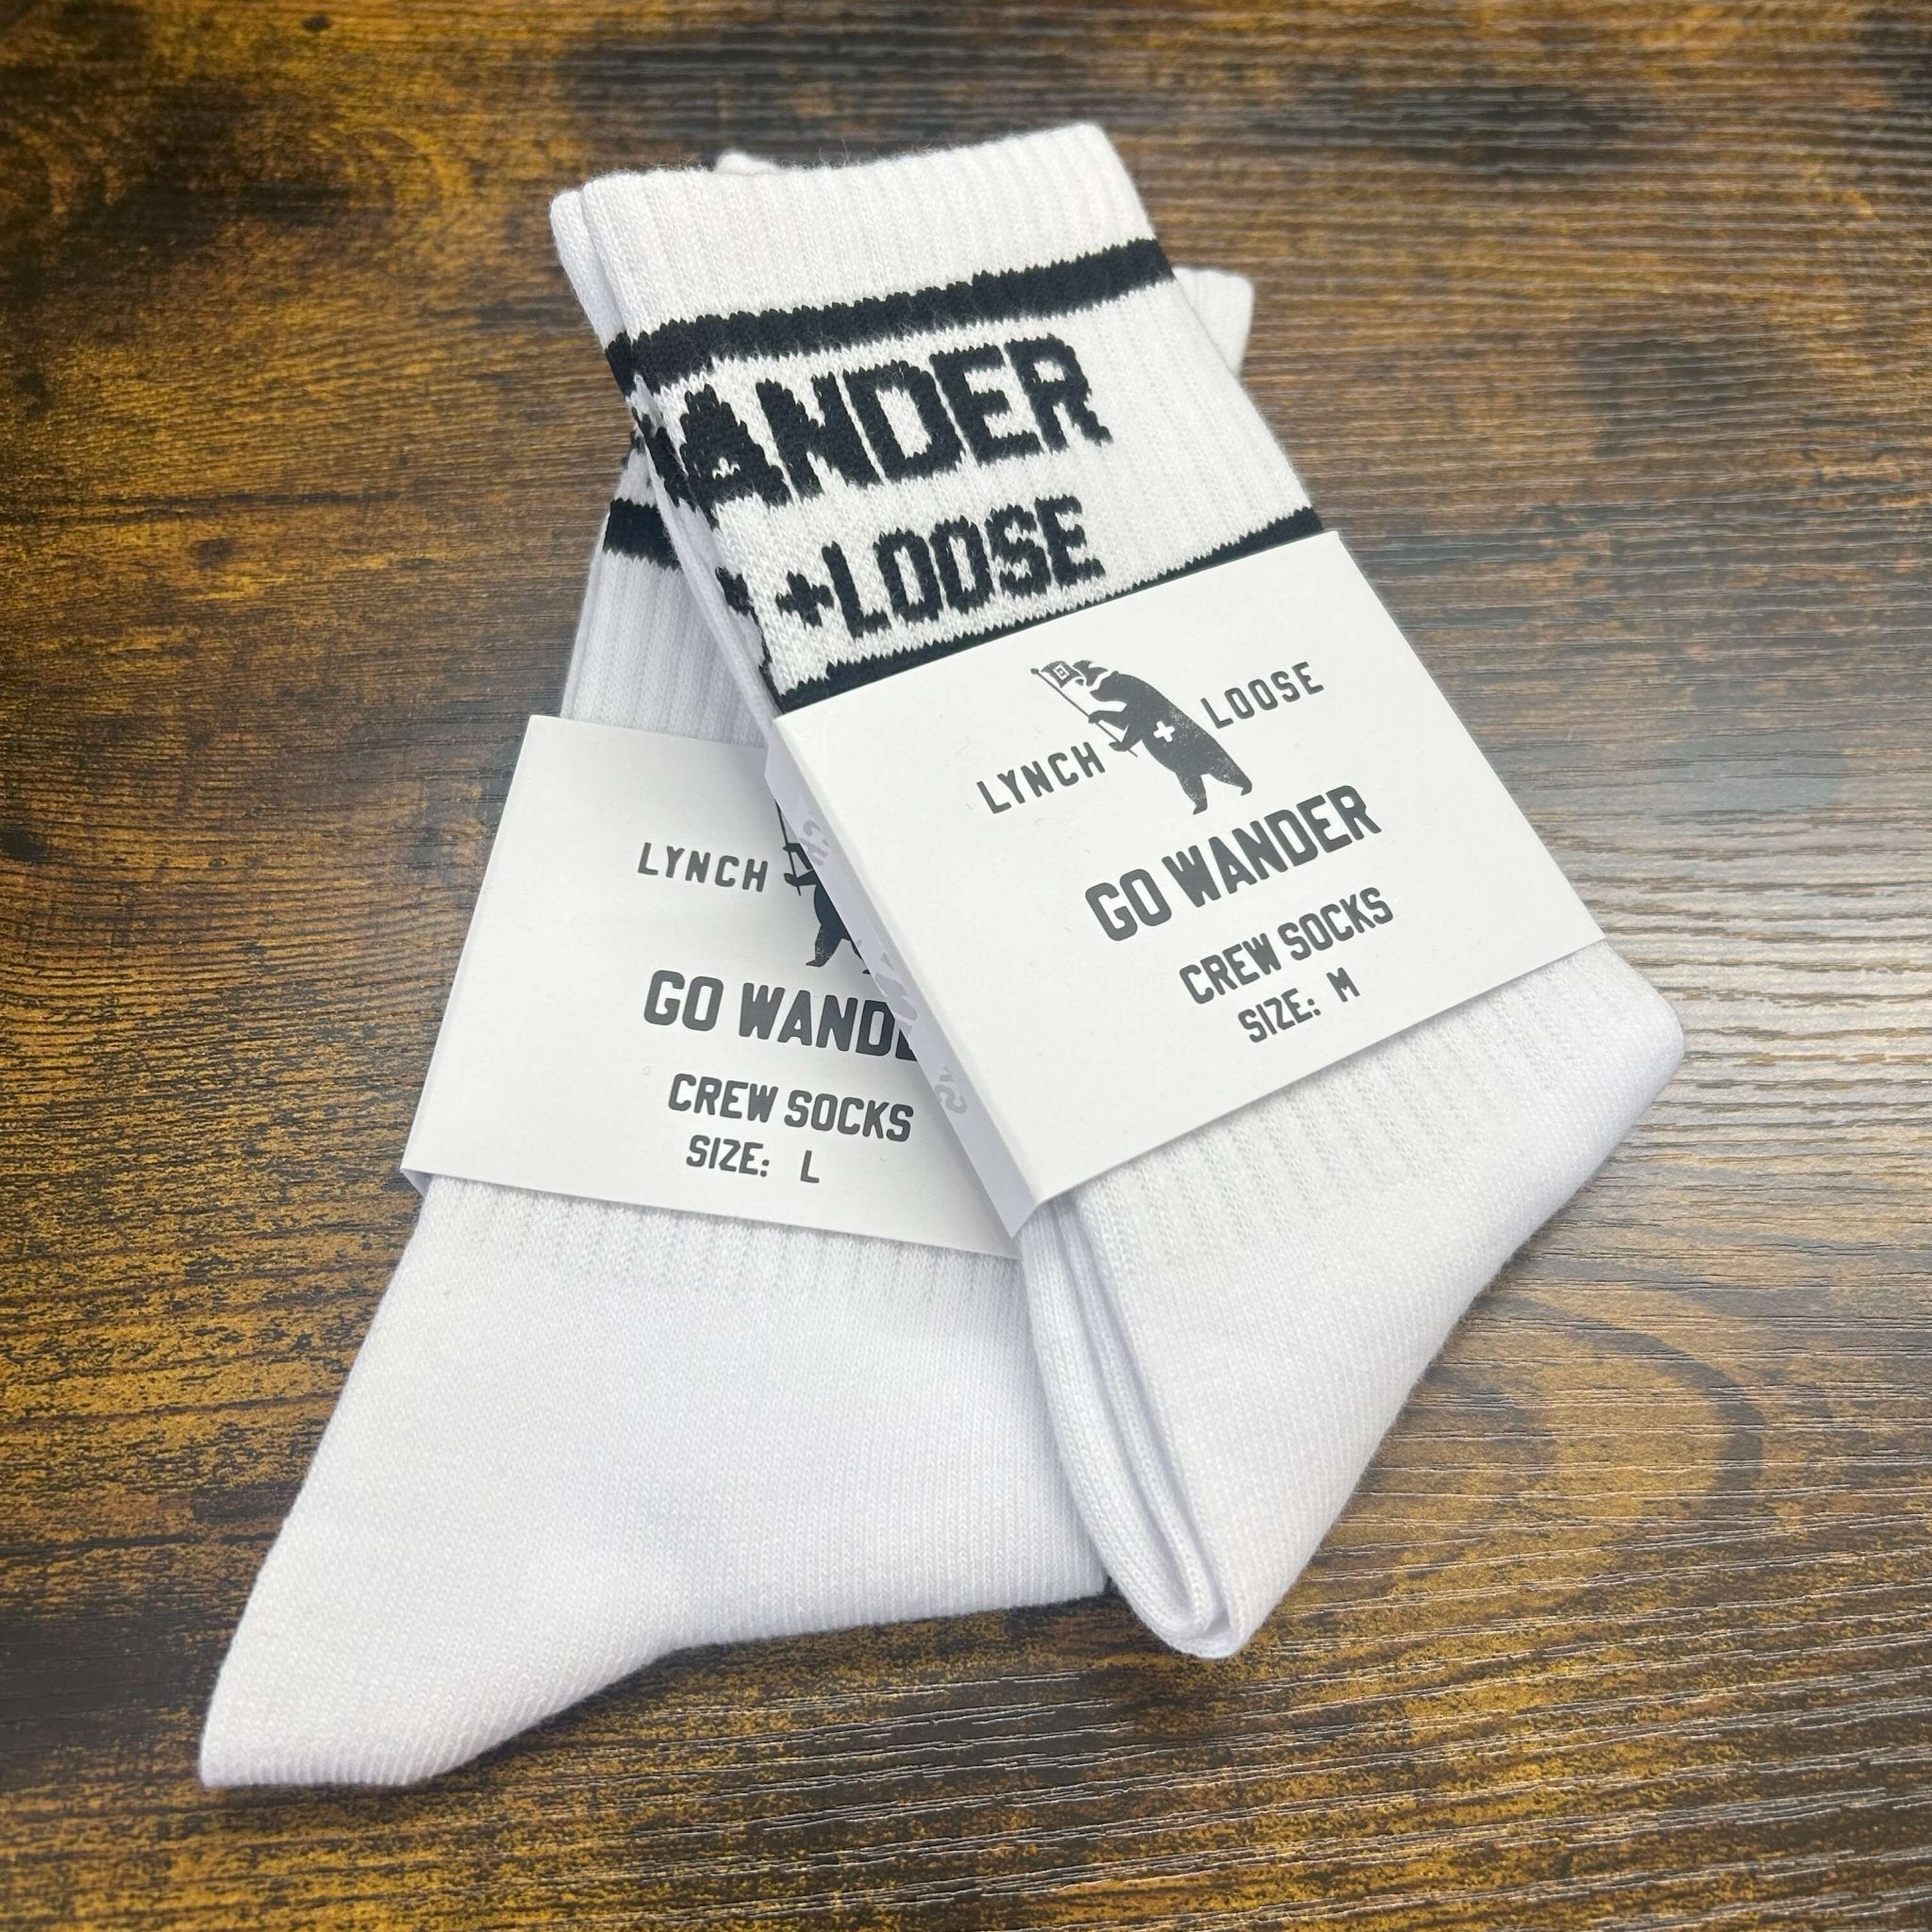 Organic " Go Wander" Socks - Lynch & Loose Clothing